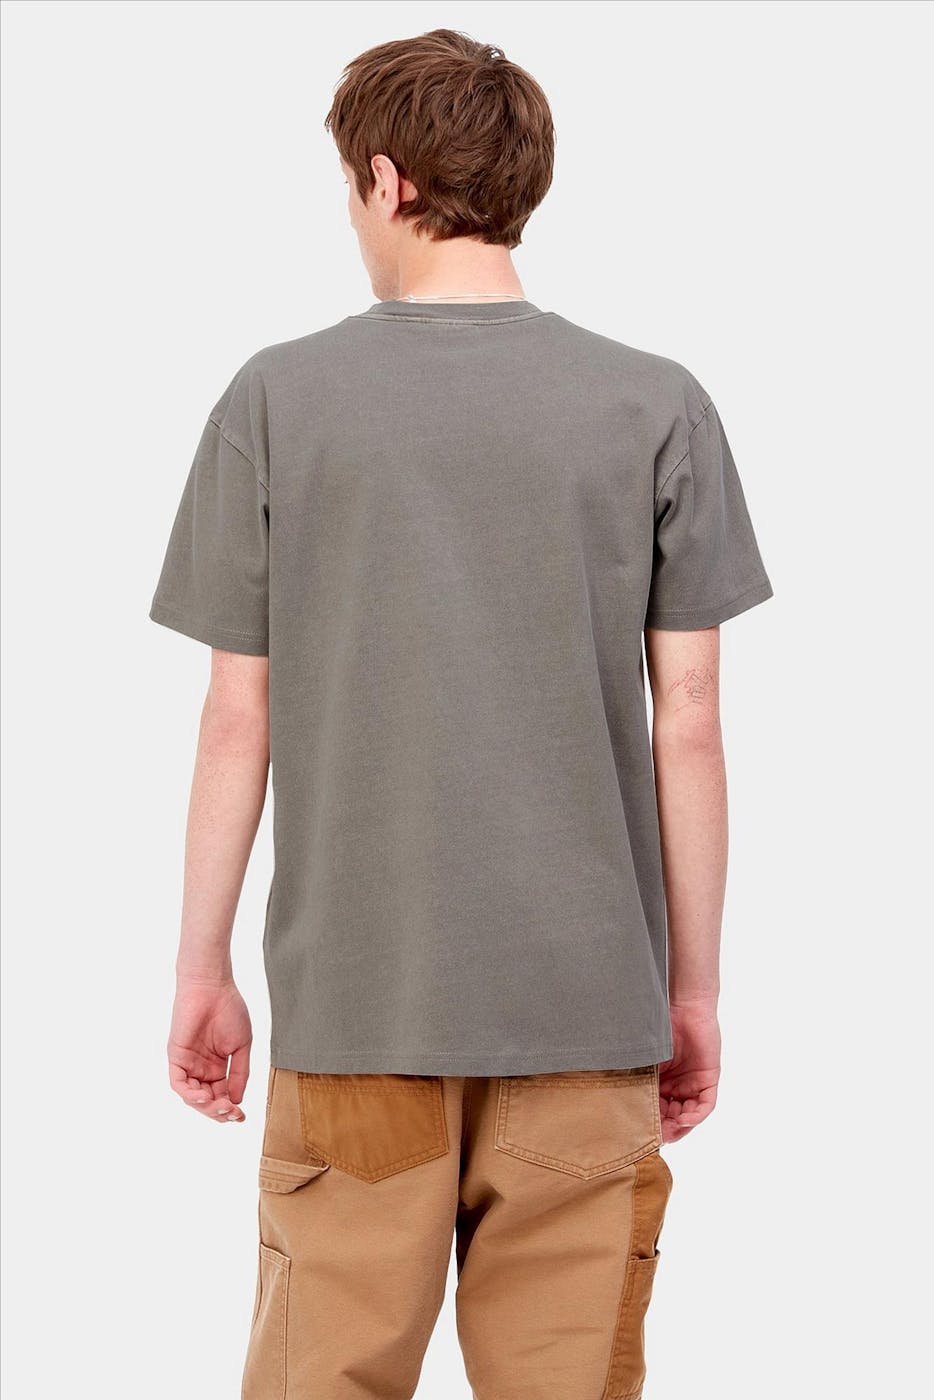 Carhartt WIP - Grijze Duster T-shirt